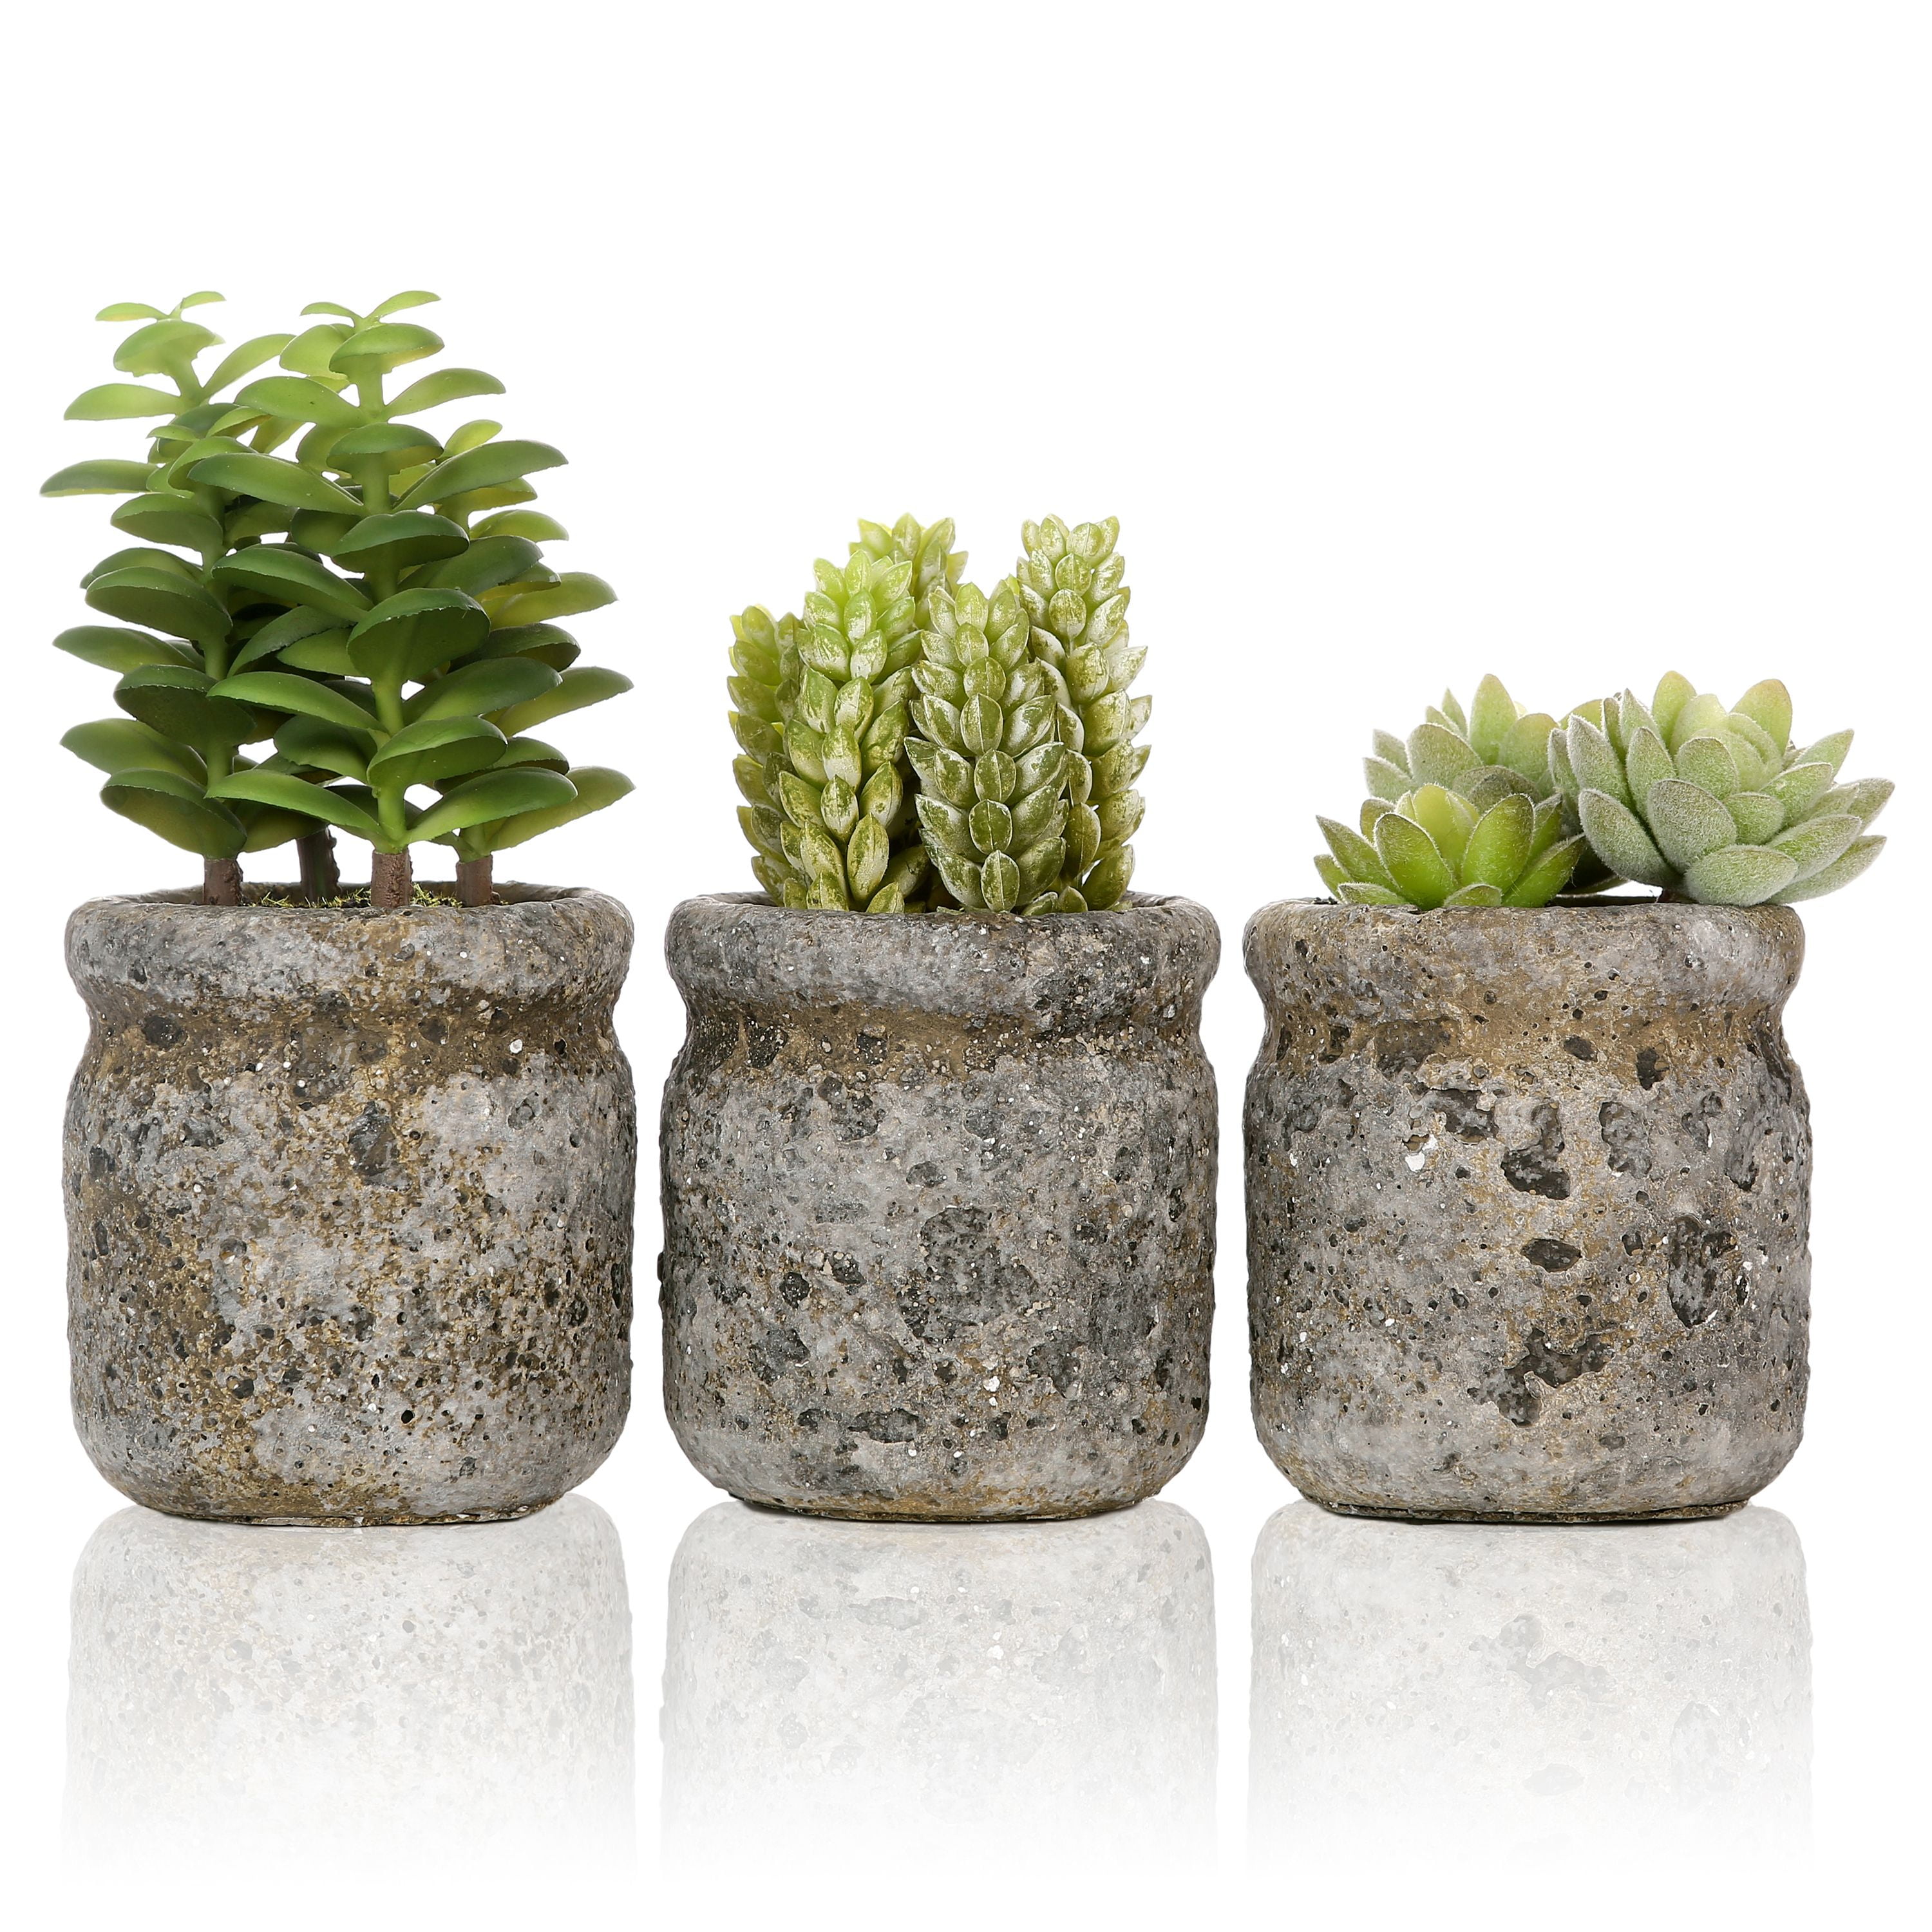 Rustic Metal Planters Flower Succulent Cactus Plant Pots Decorative Green 